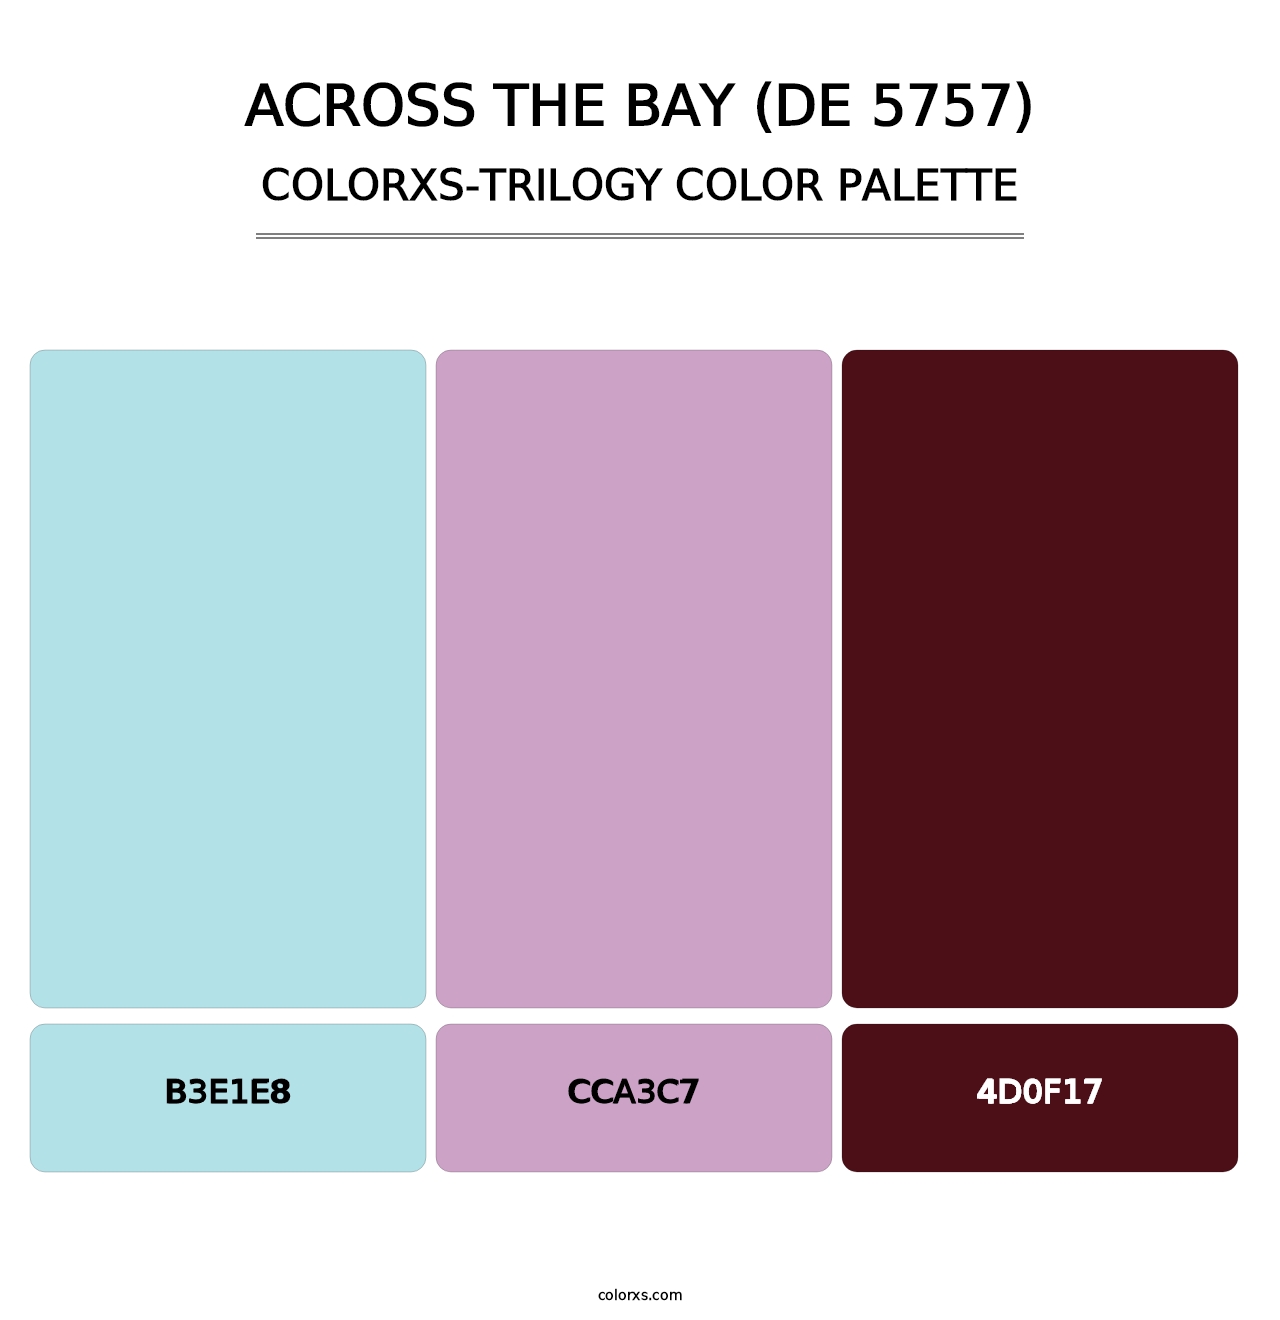 Across the Bay (DE 5757) - Colorxs Trilogy Palette